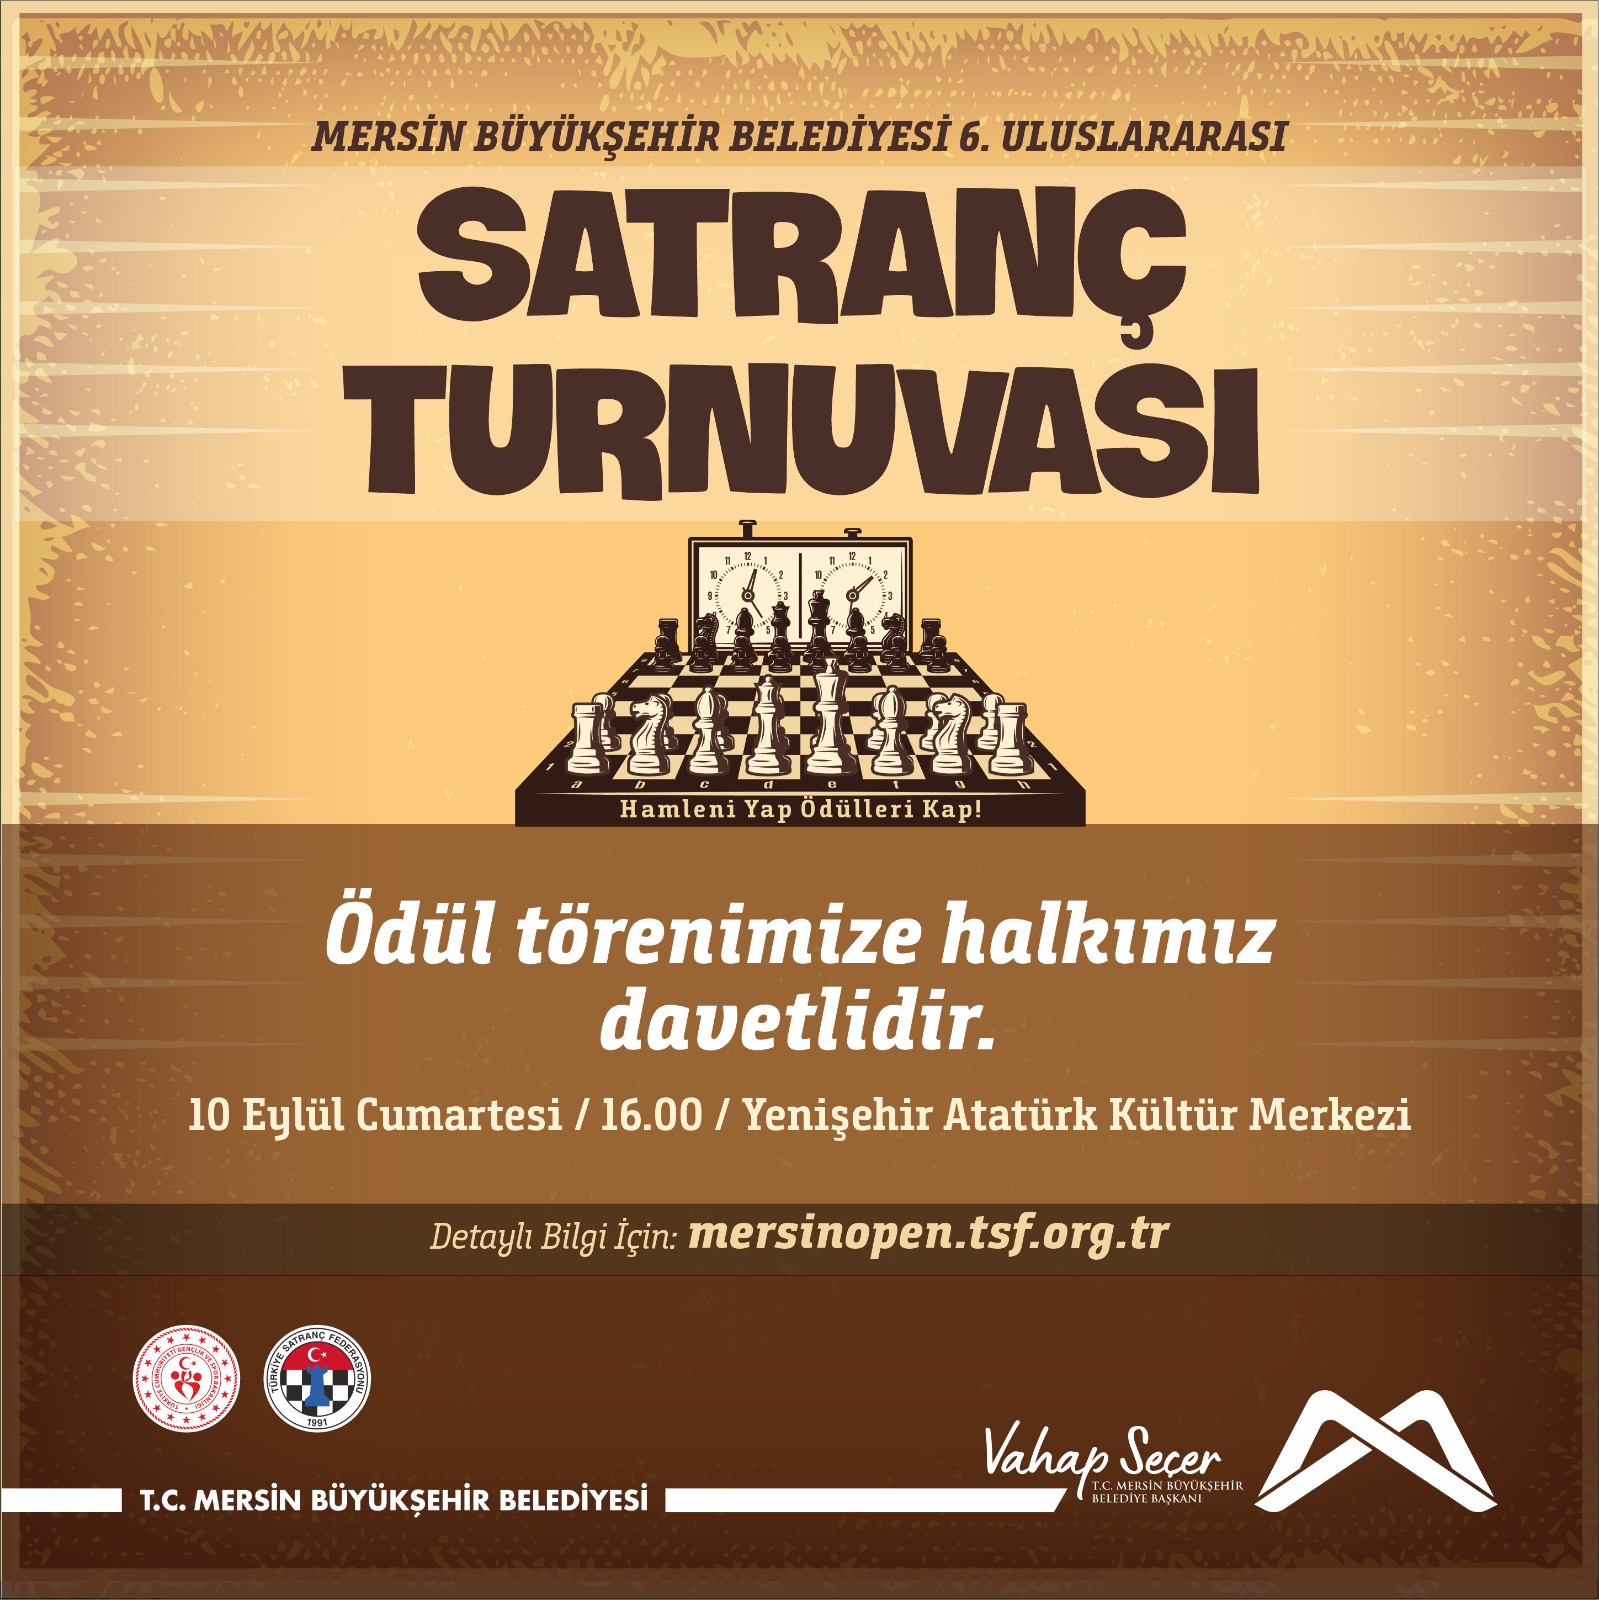 Mersin Büyükşehir Belediyesi 6. Uluslararası Satranç Turnuvası'nın ödül törenine tüm halkımız davetlidir